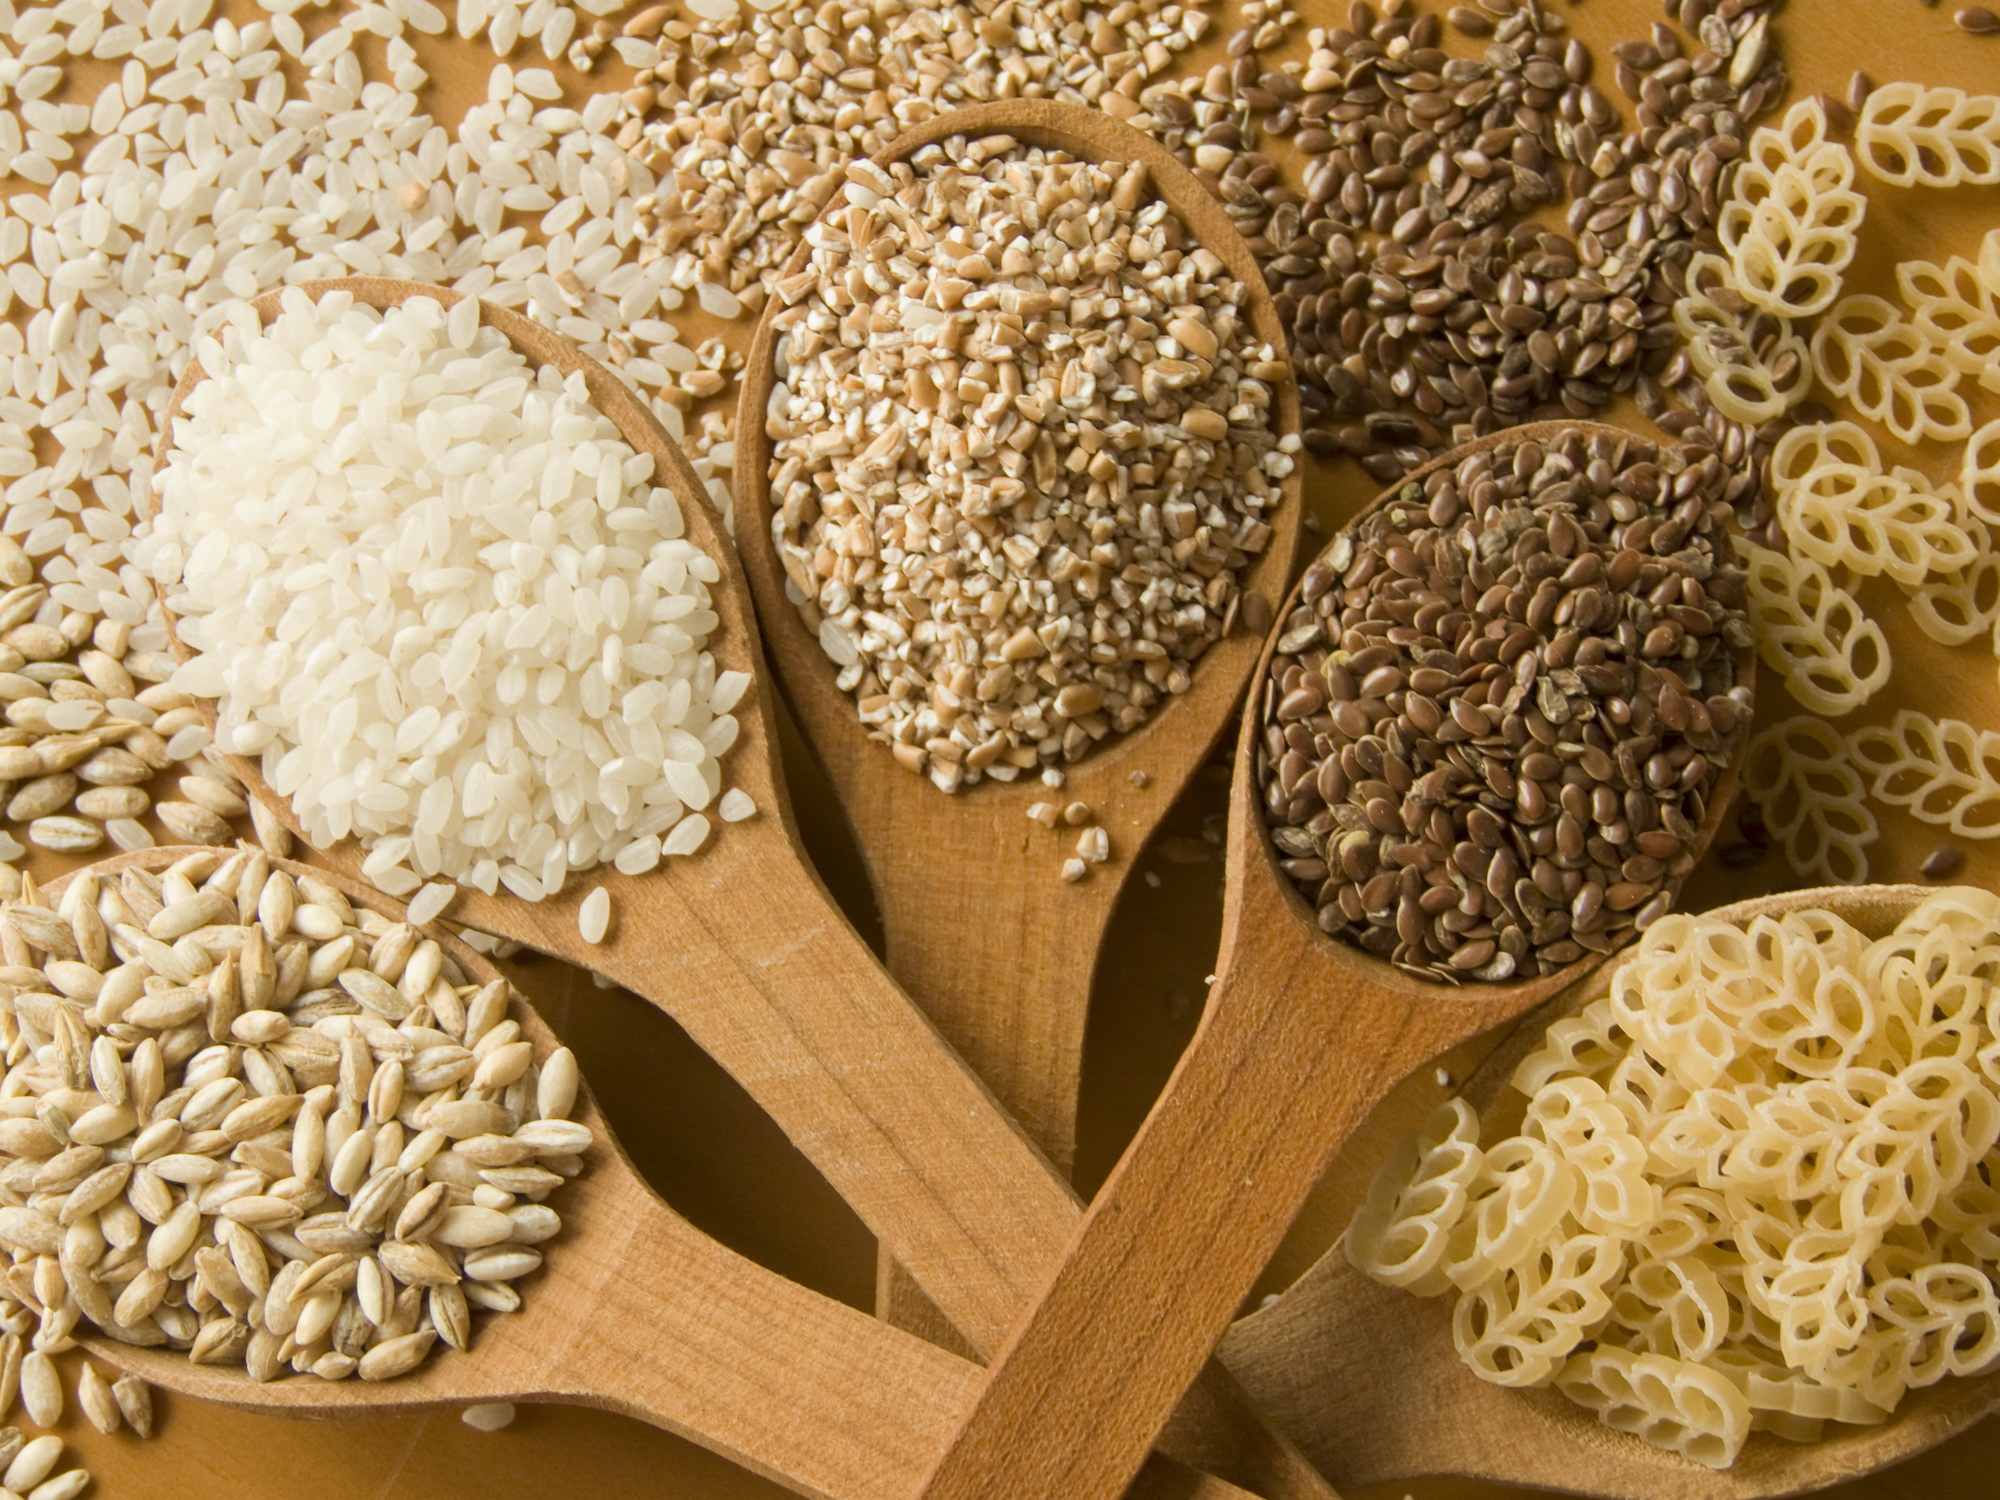 La consommation de céréales raffinées serait associée à une&nbsp;mortalité plus élevée. © AGfoto, Adobe Stock&nbsp;